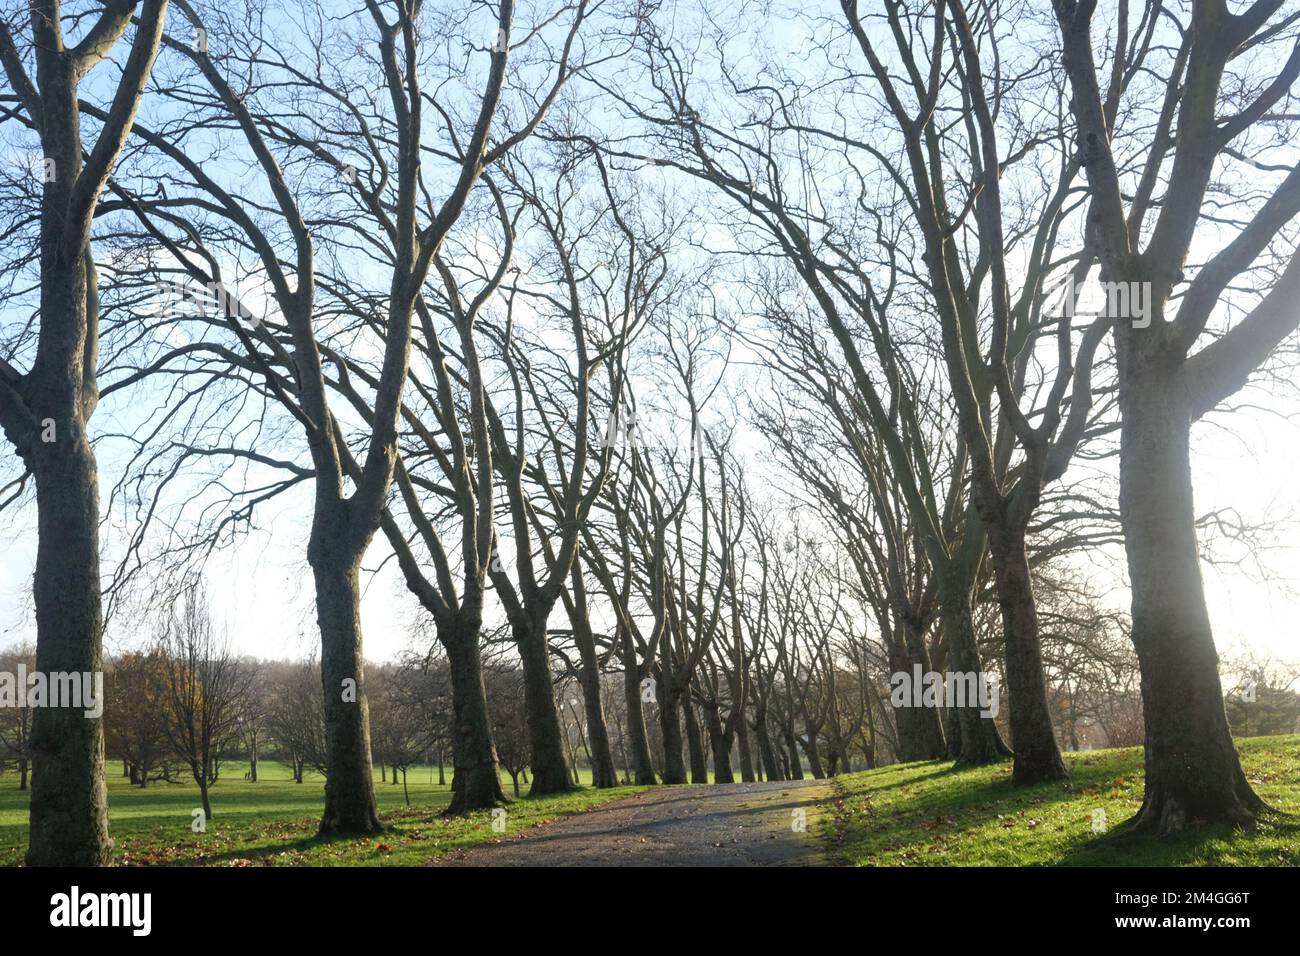 Le soleil d'hiver projette de longues ombres distinctes sur l'avenue des arbres, vue ici à Gladstone Park, au nord de Londres Banque D'Images